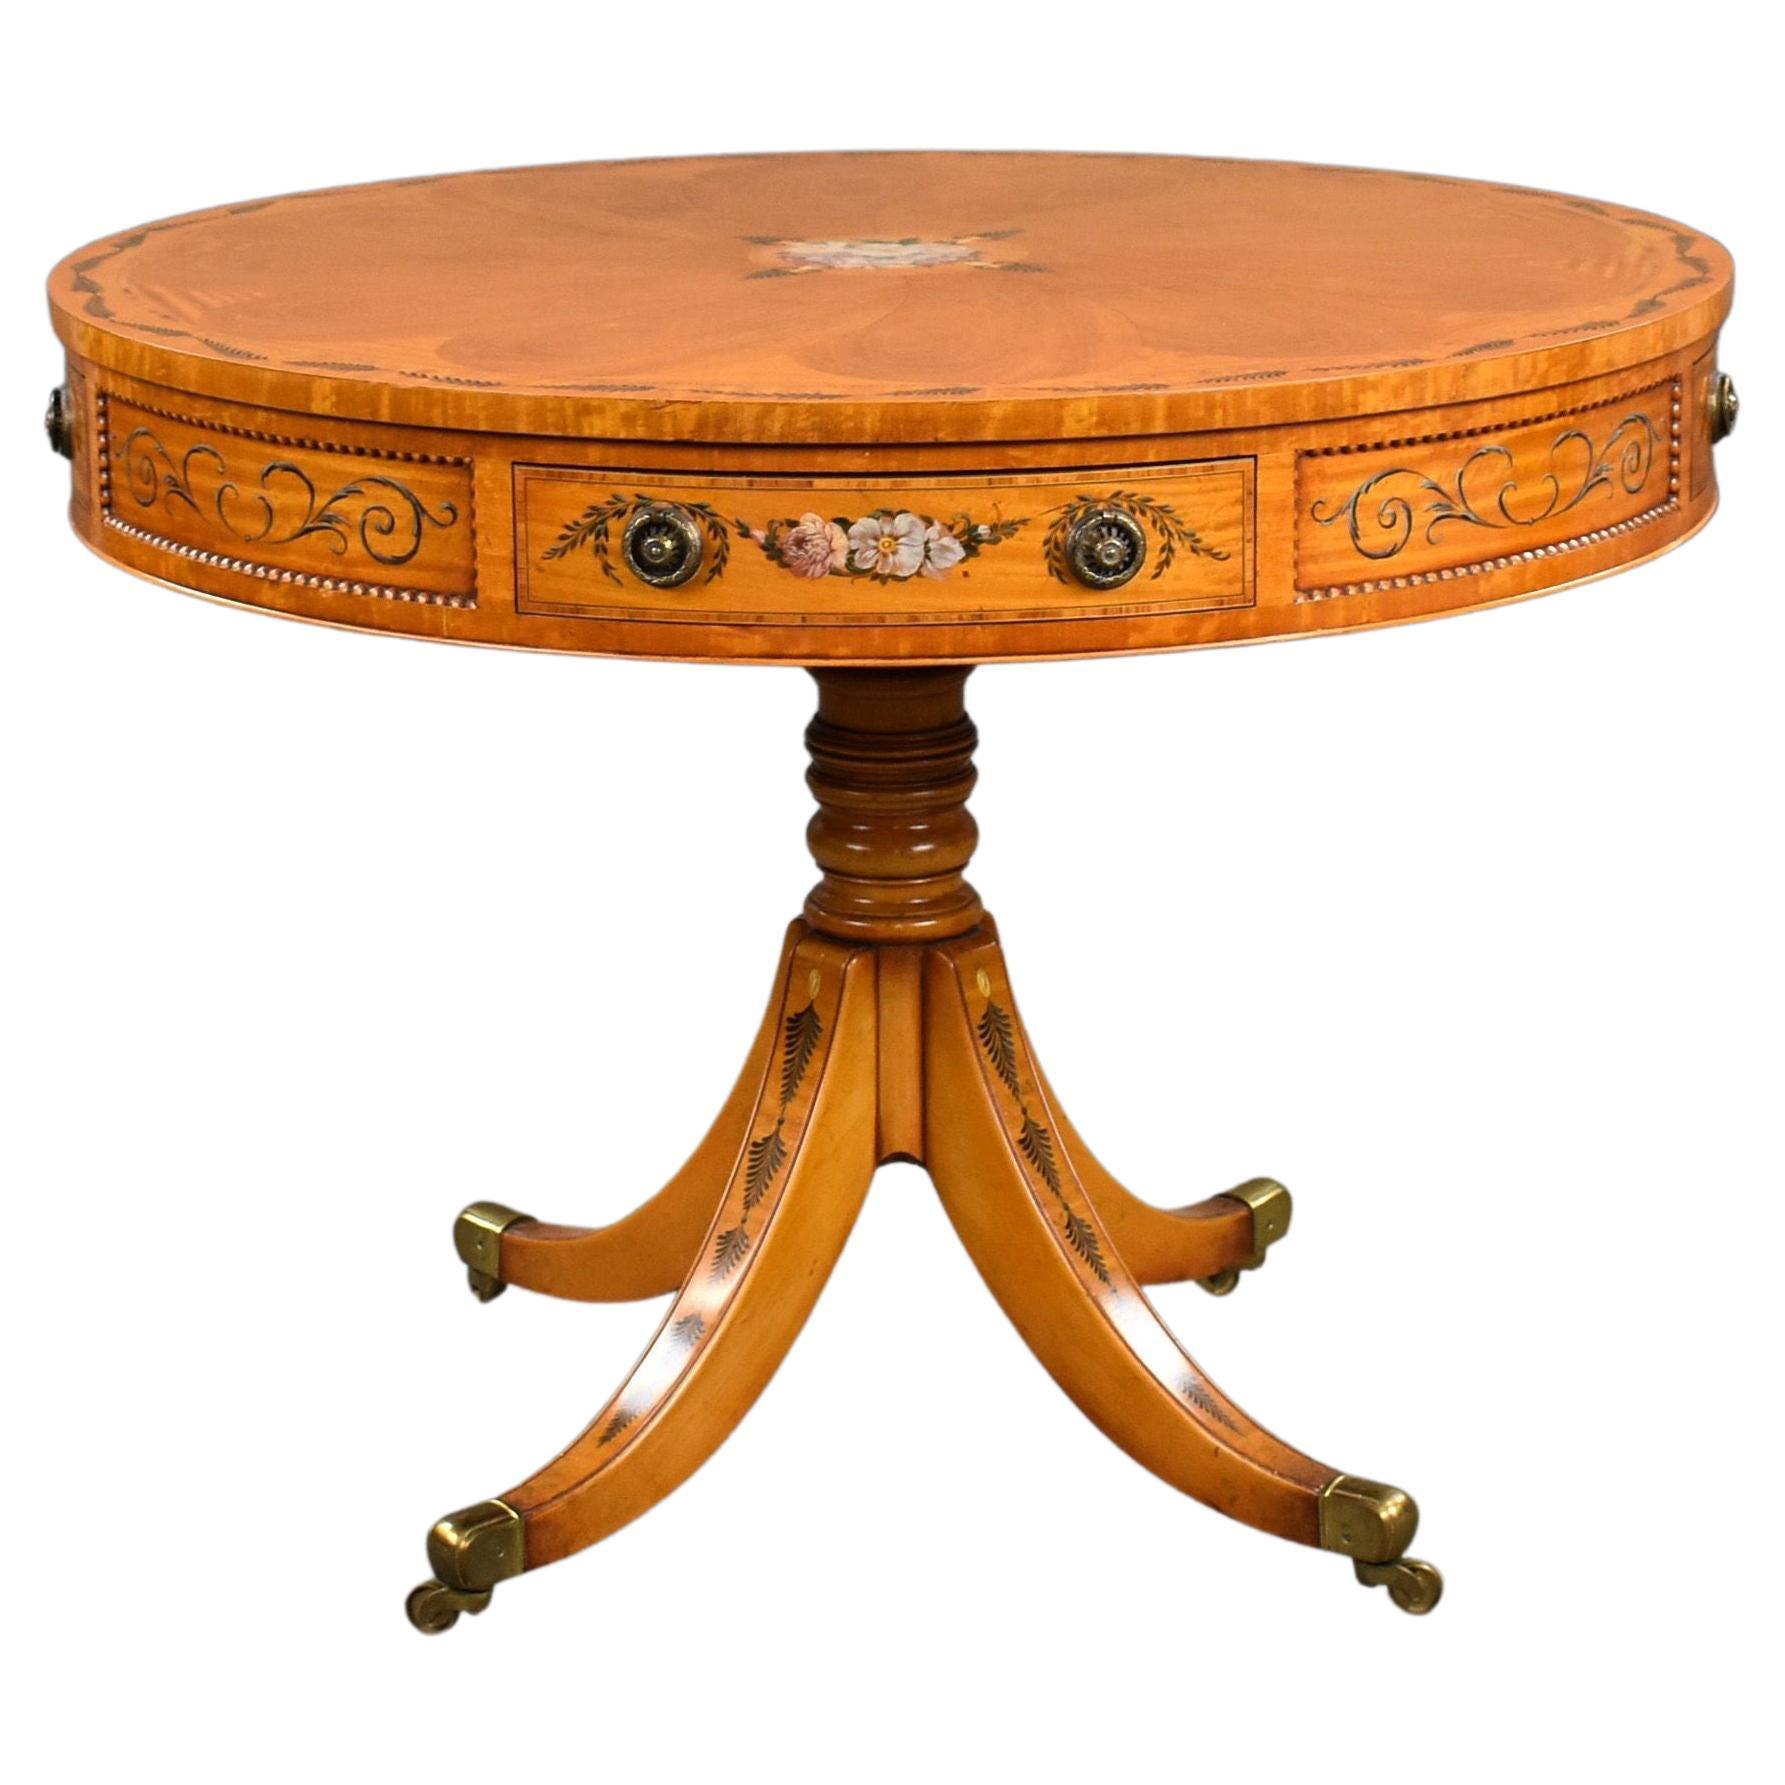 Table à tambour édouardienne en bois satiné peint à la main